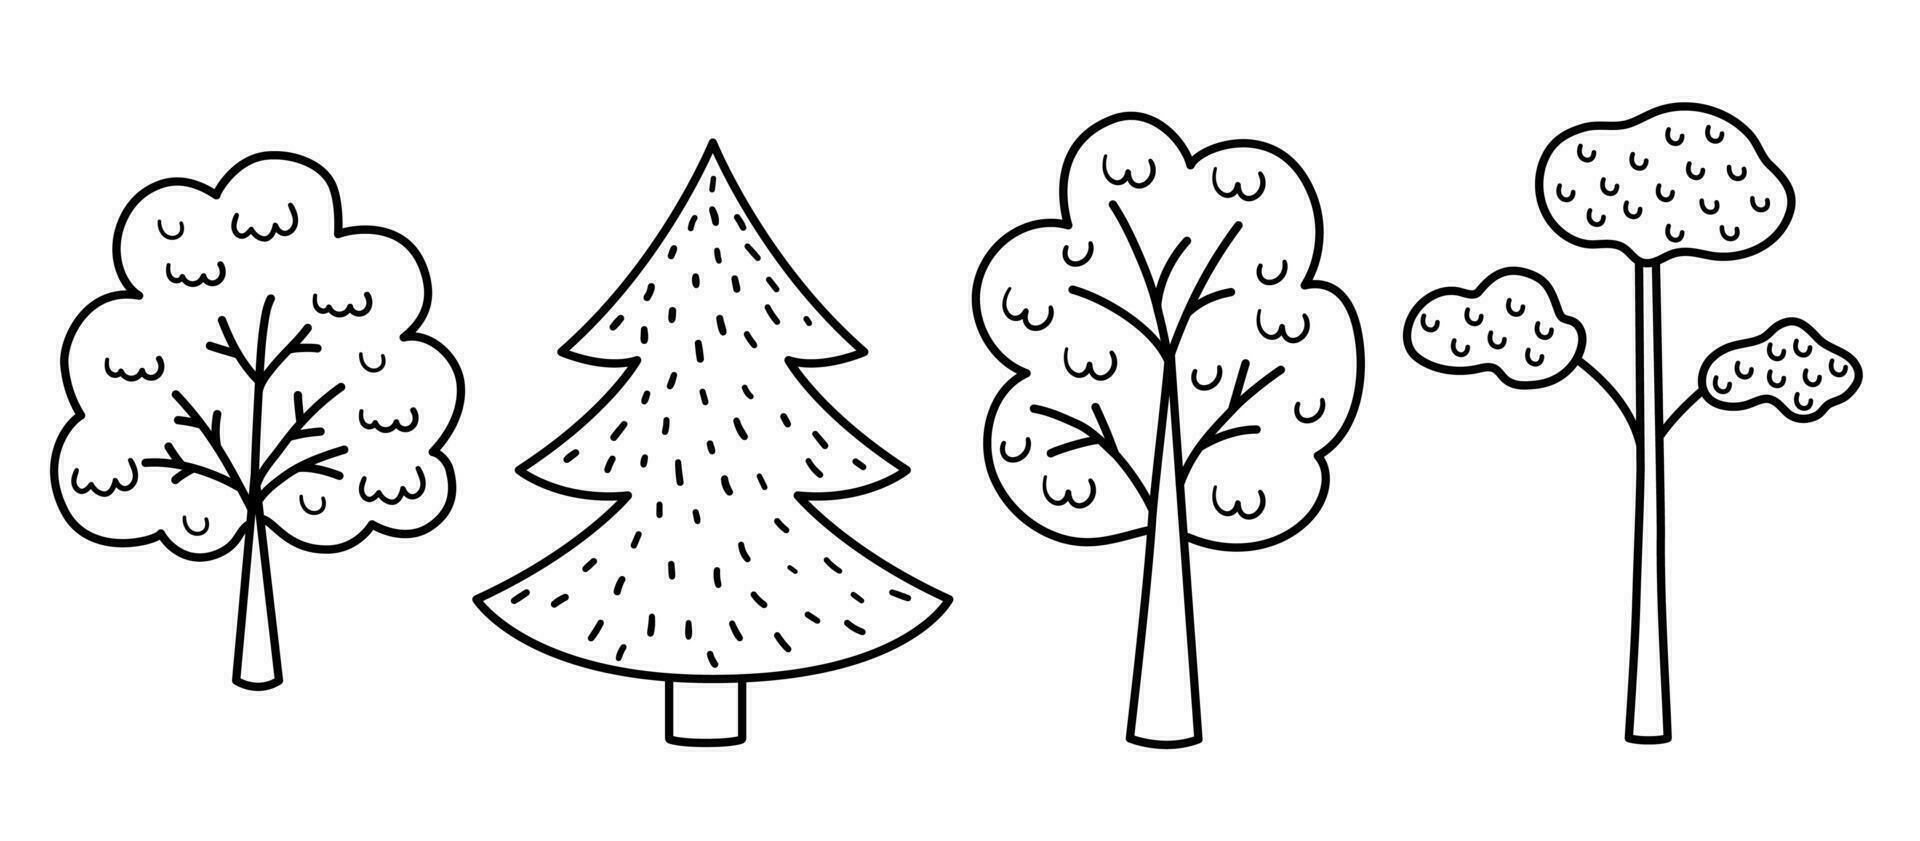 Vektor schwarz und Weiß Bäume Satz. Wald Färbung Seite zum Kinder. süß Natur Gliederung Sammlung mit Pflanzen. Garten oder Wald Symbole Pack